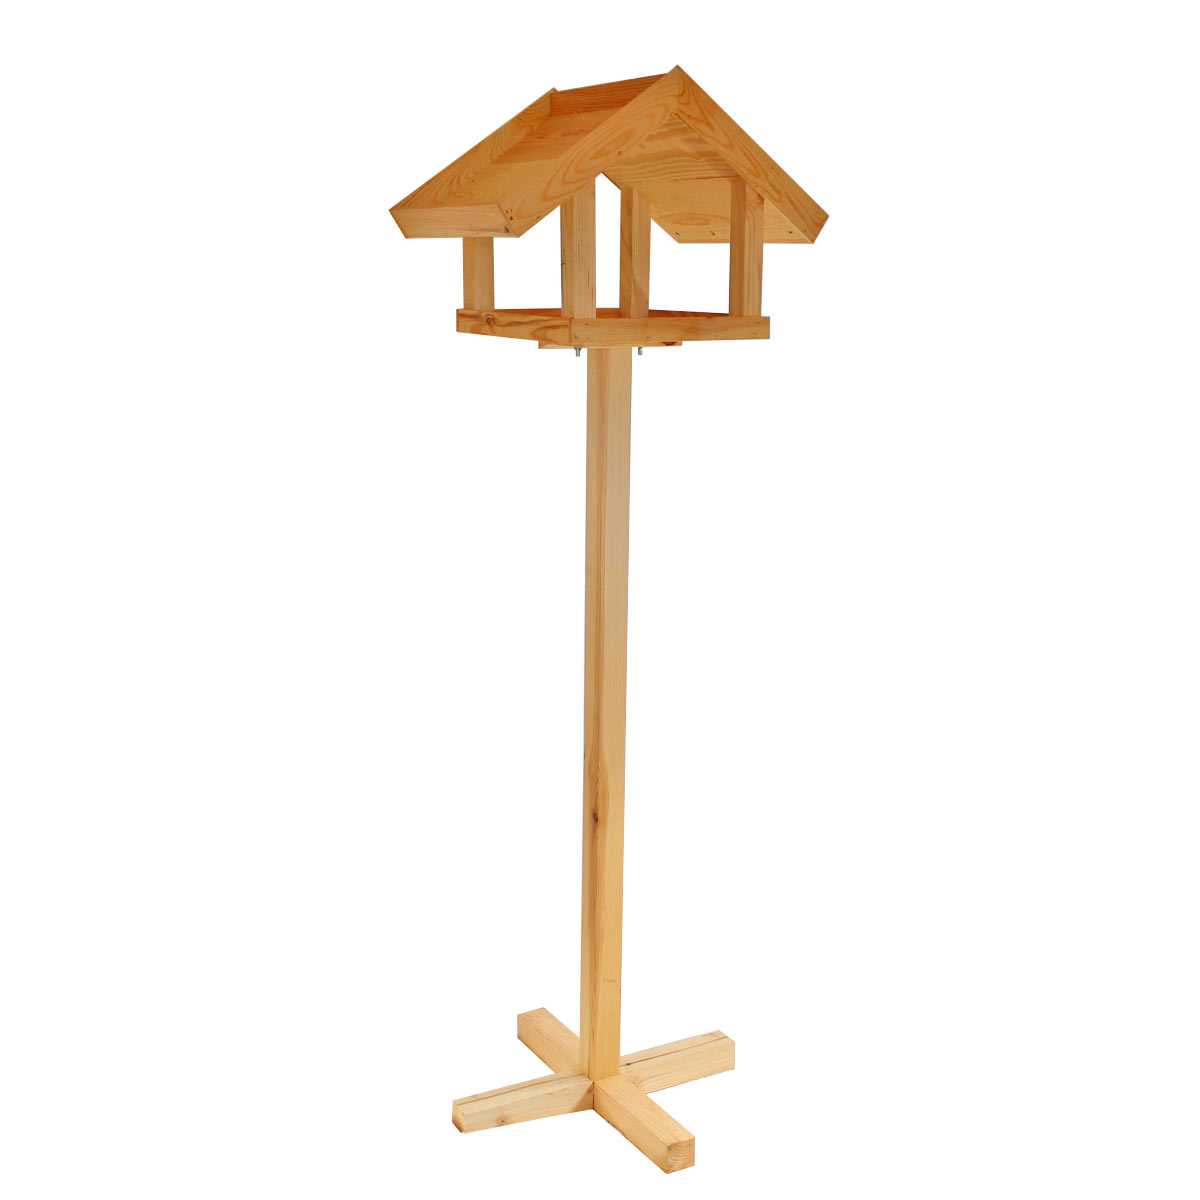 Mangeoire oiseaux sur pied en bois - Toit double pente effet ardoise, vente  au meilleur prix